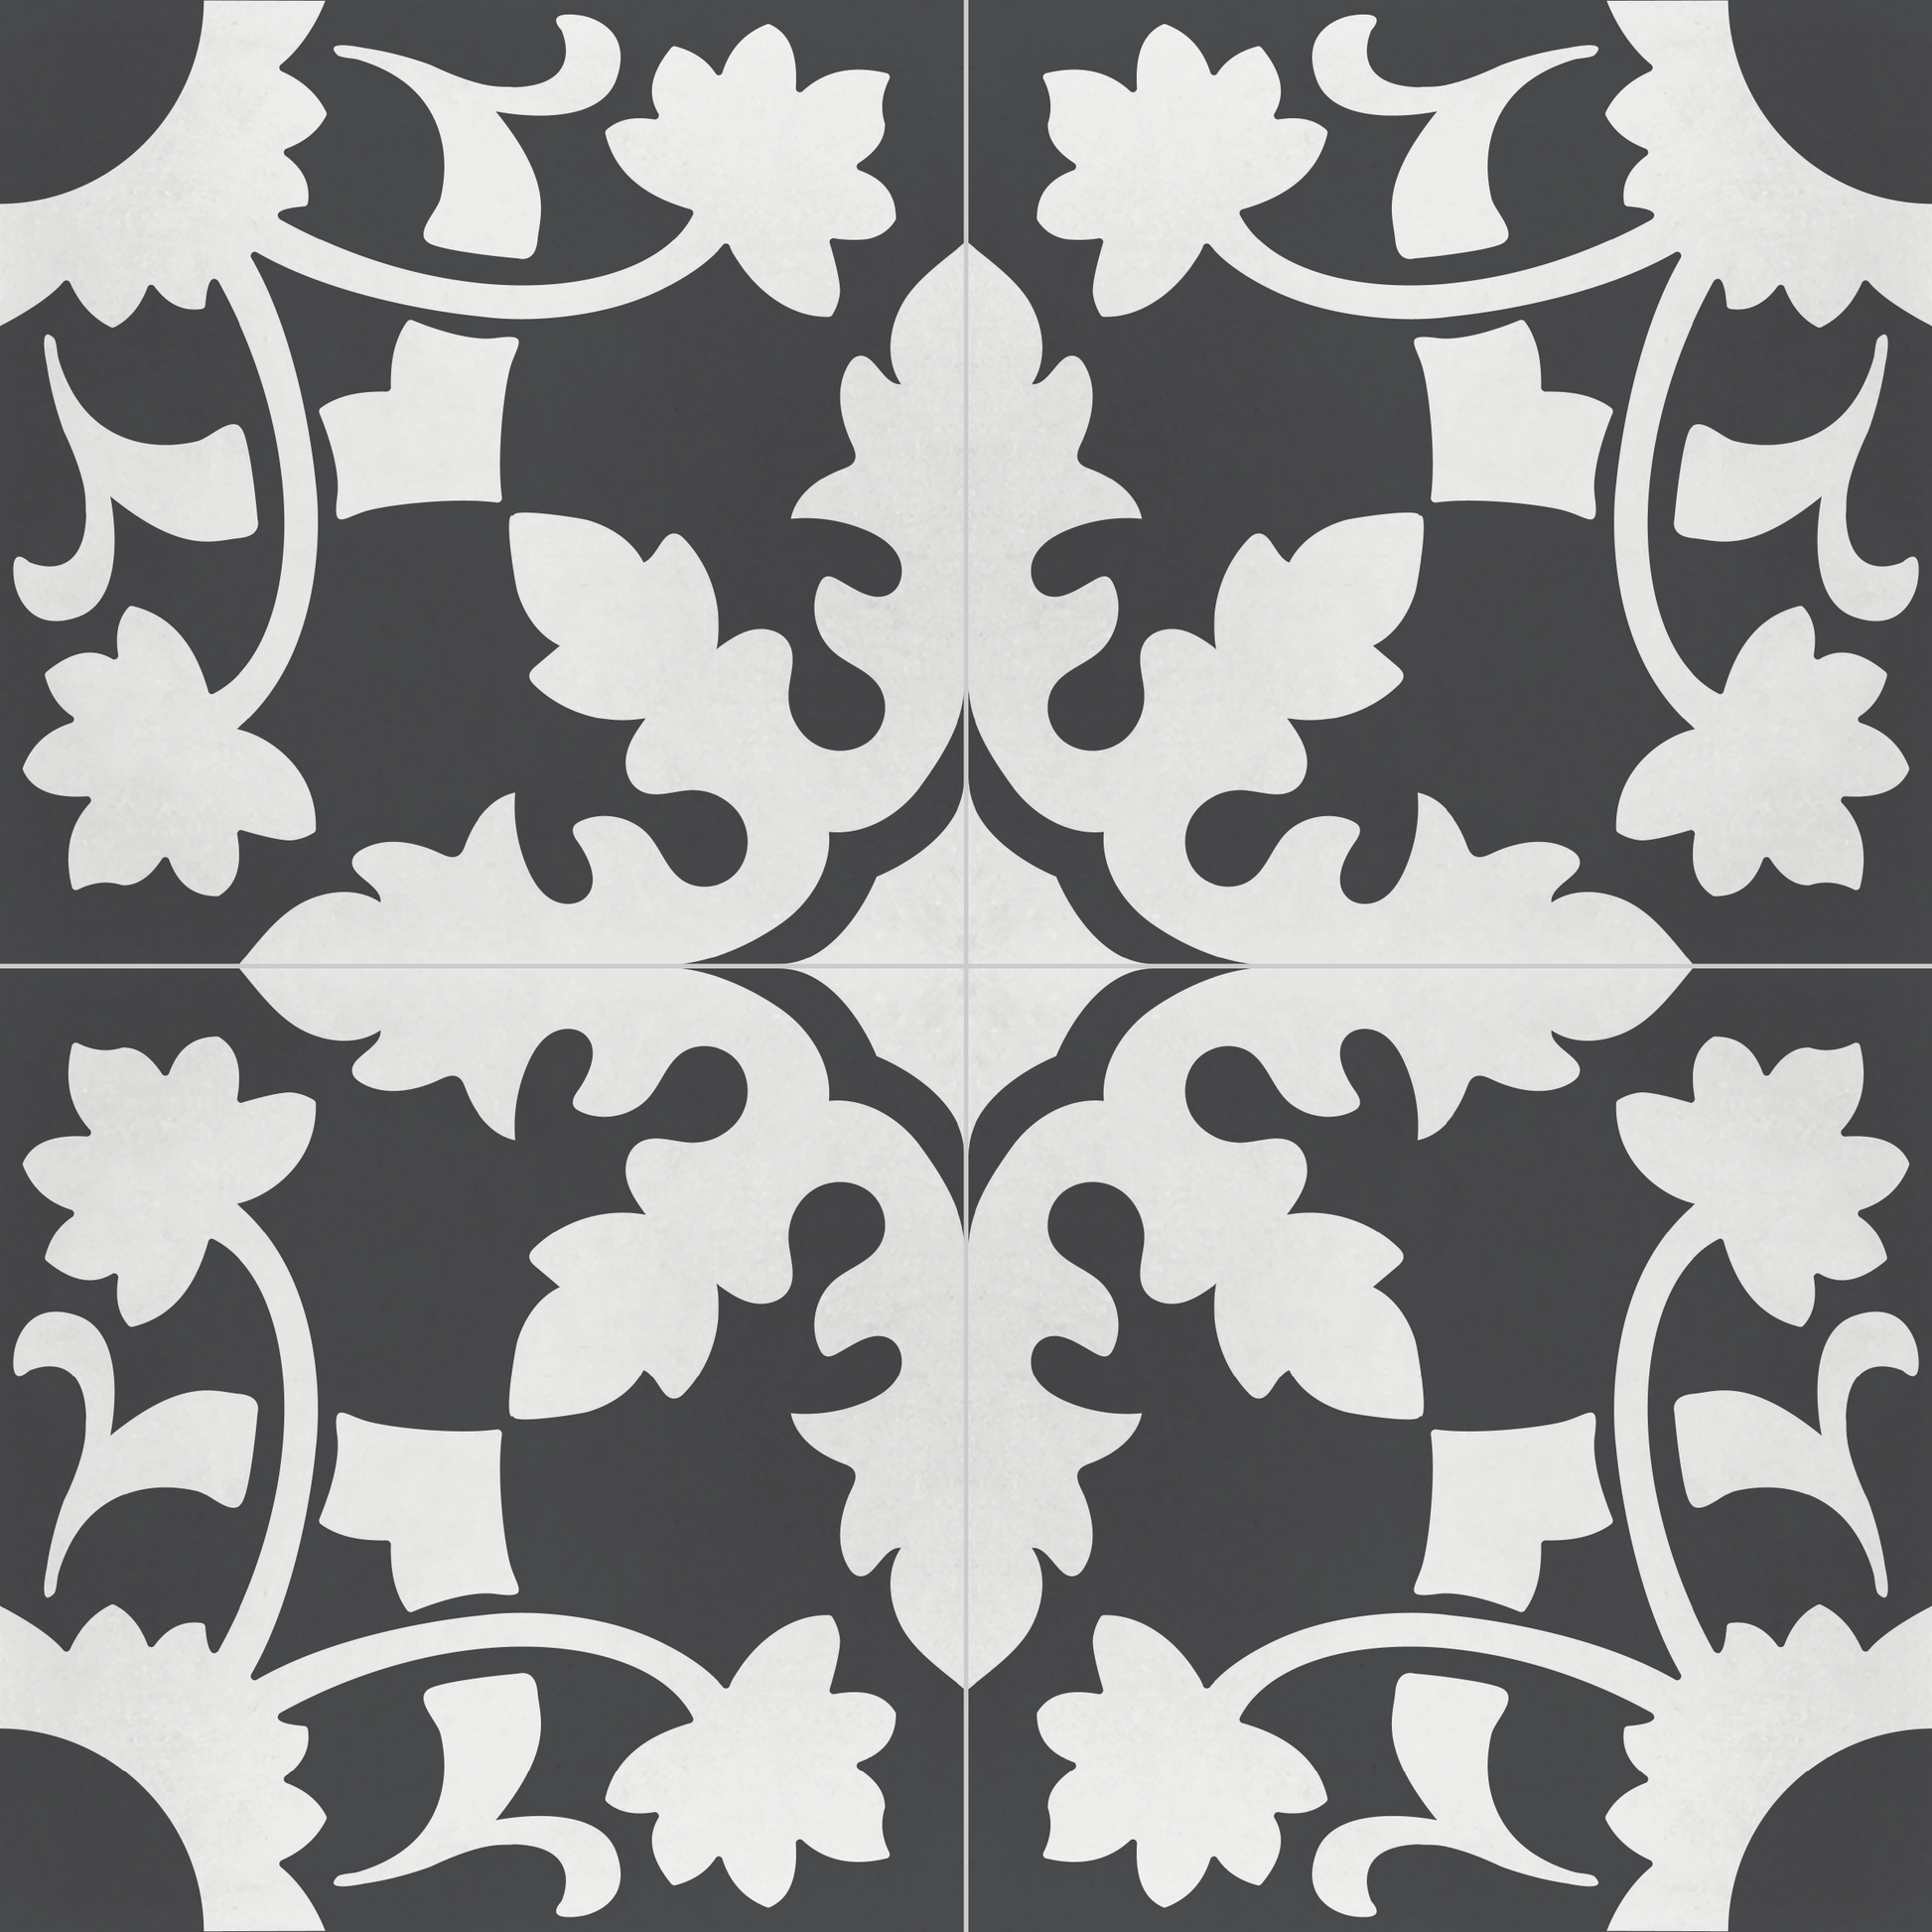 Encaustic Cement Tile, Concrete Tile, Traditional Floral , Pattern Tiles